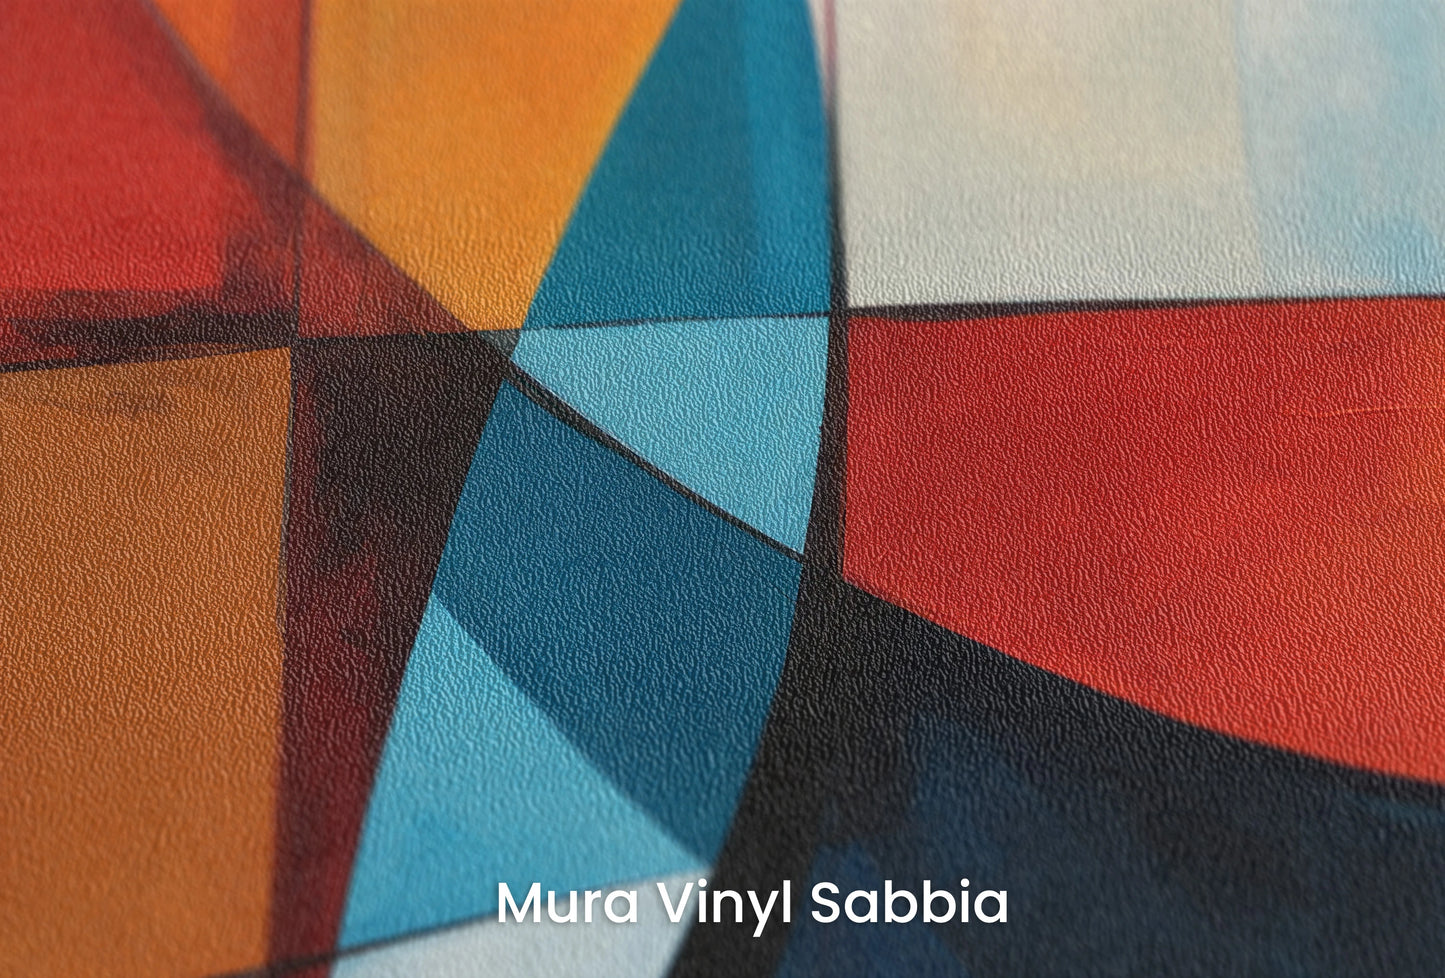 Zbliżenie na artystyczną fototapetę o nazwie Intersecting Orbits na podłożu Mura Vinyl Sabbia struktura grubego ziarna piasku.